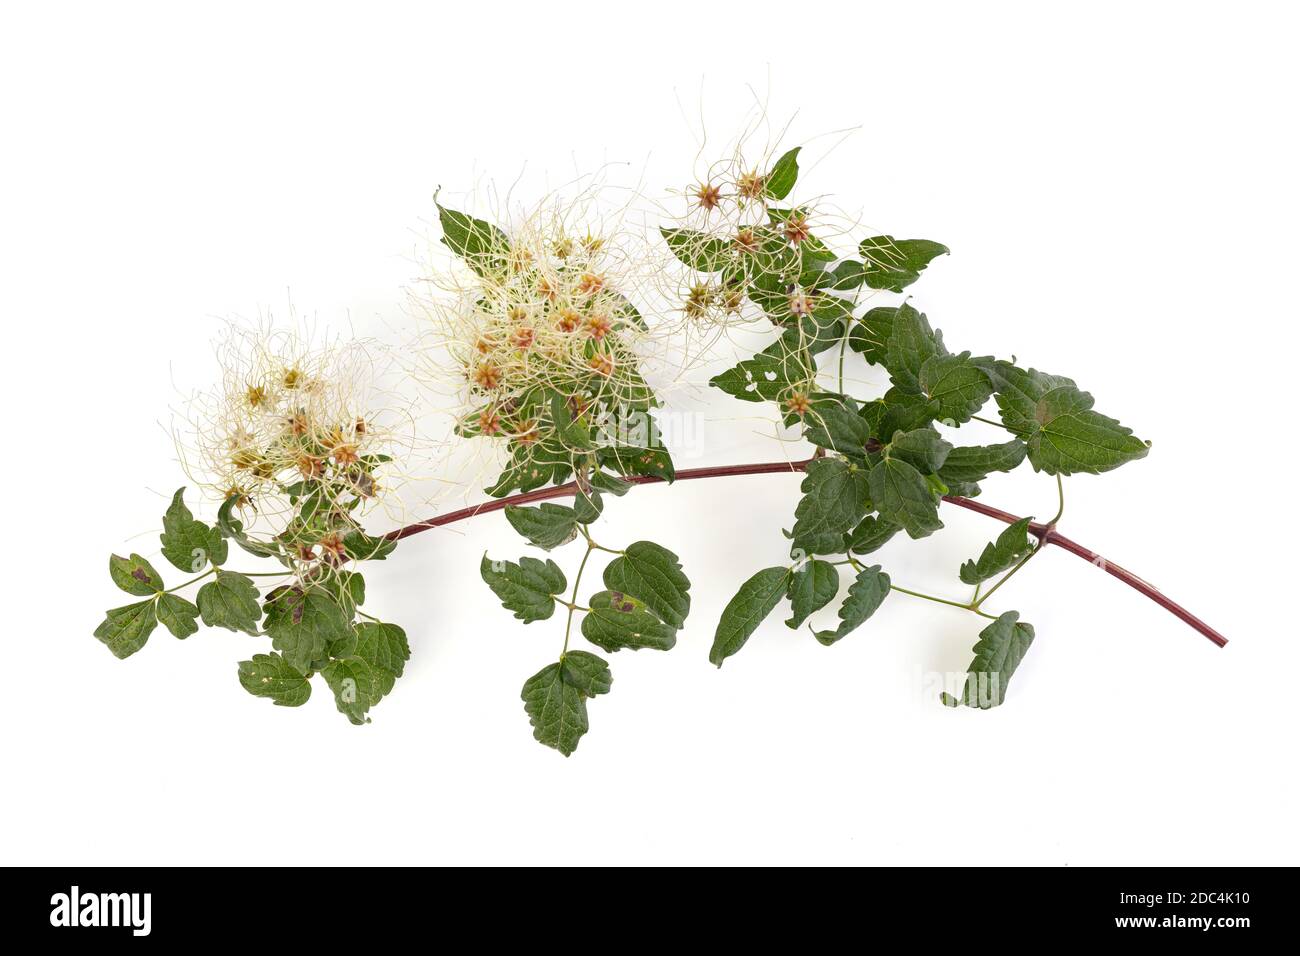 Clematis vitalba come pianta invasiva su sfondo bianco Foto Stock